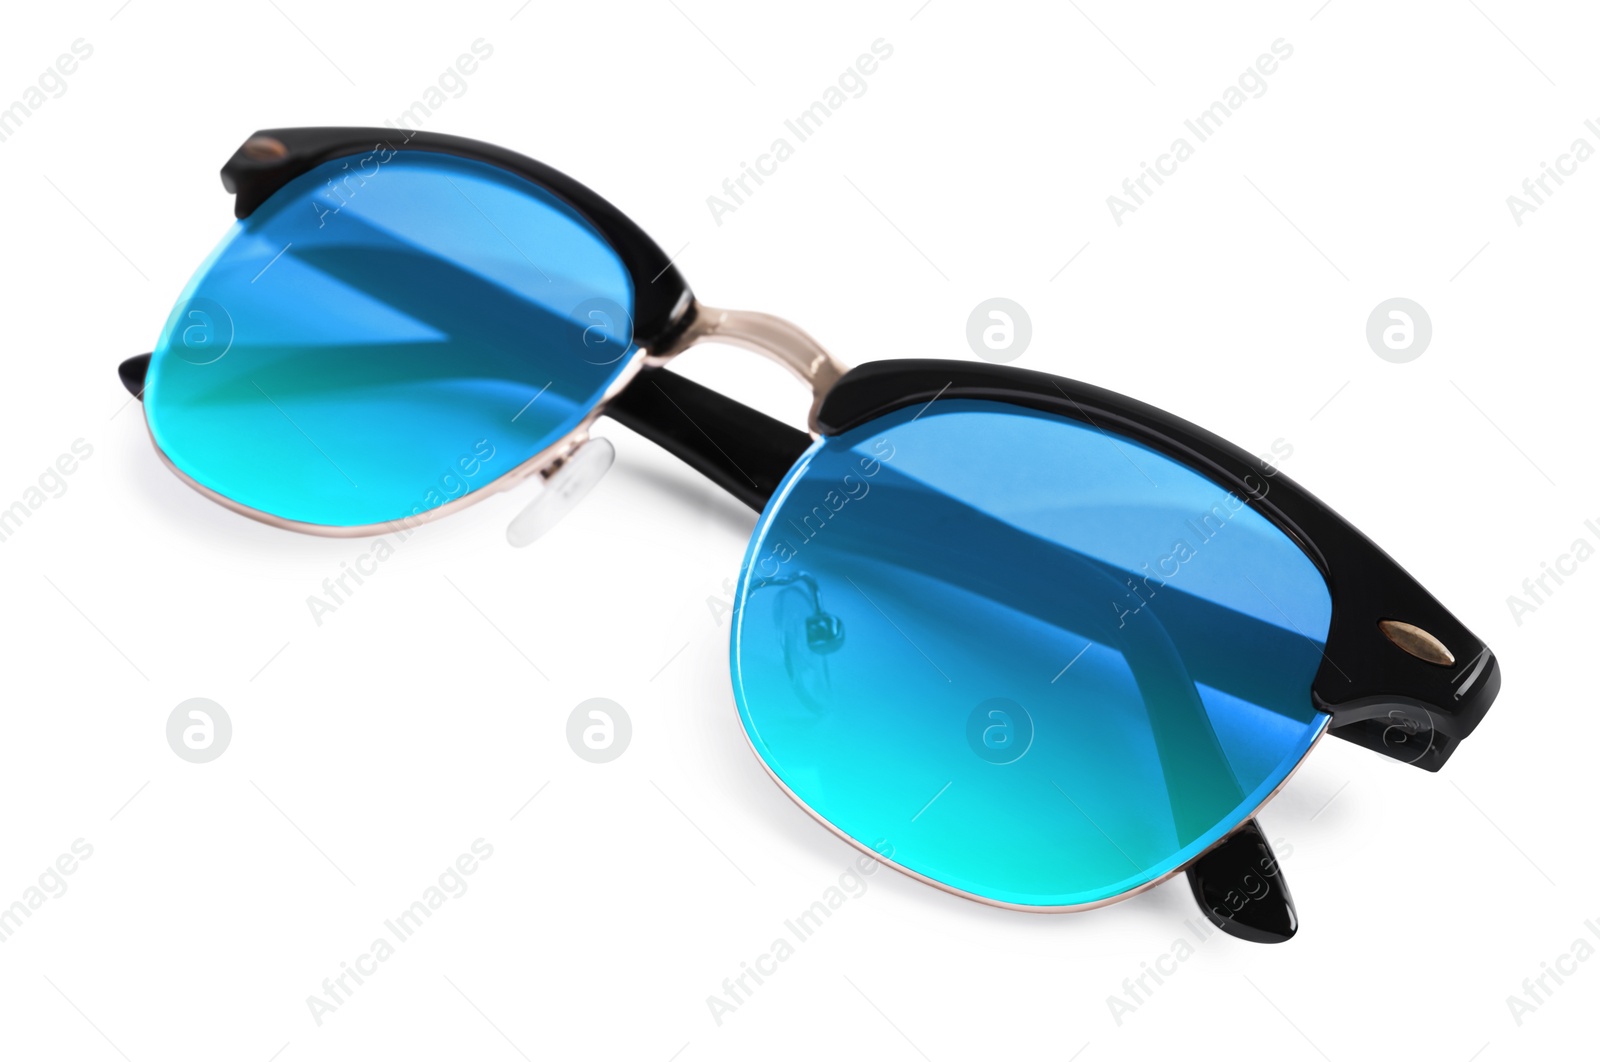 Image of Stylish sunglasses with light blue lenses on white background